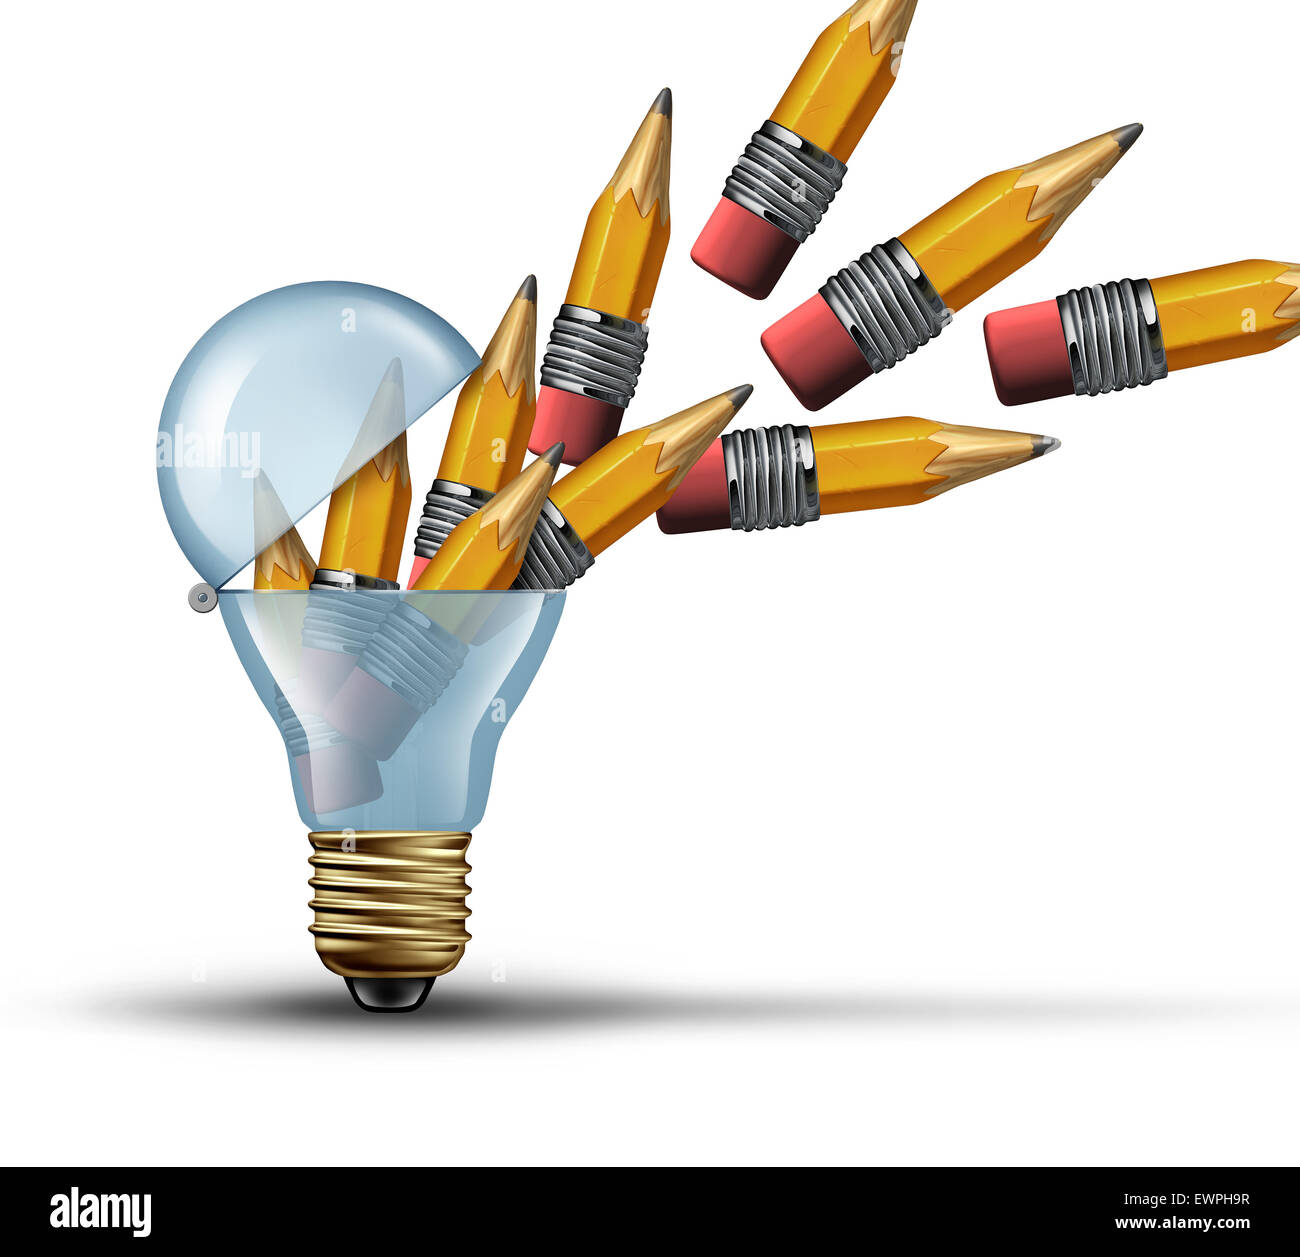 L'imagination et la créativité comme un concept ampoule ampoule ouverte ou  symbole de la pensée hors de la boîte avec un groupe de crayons, étant  libérés par l'intérieur en tant que réseau